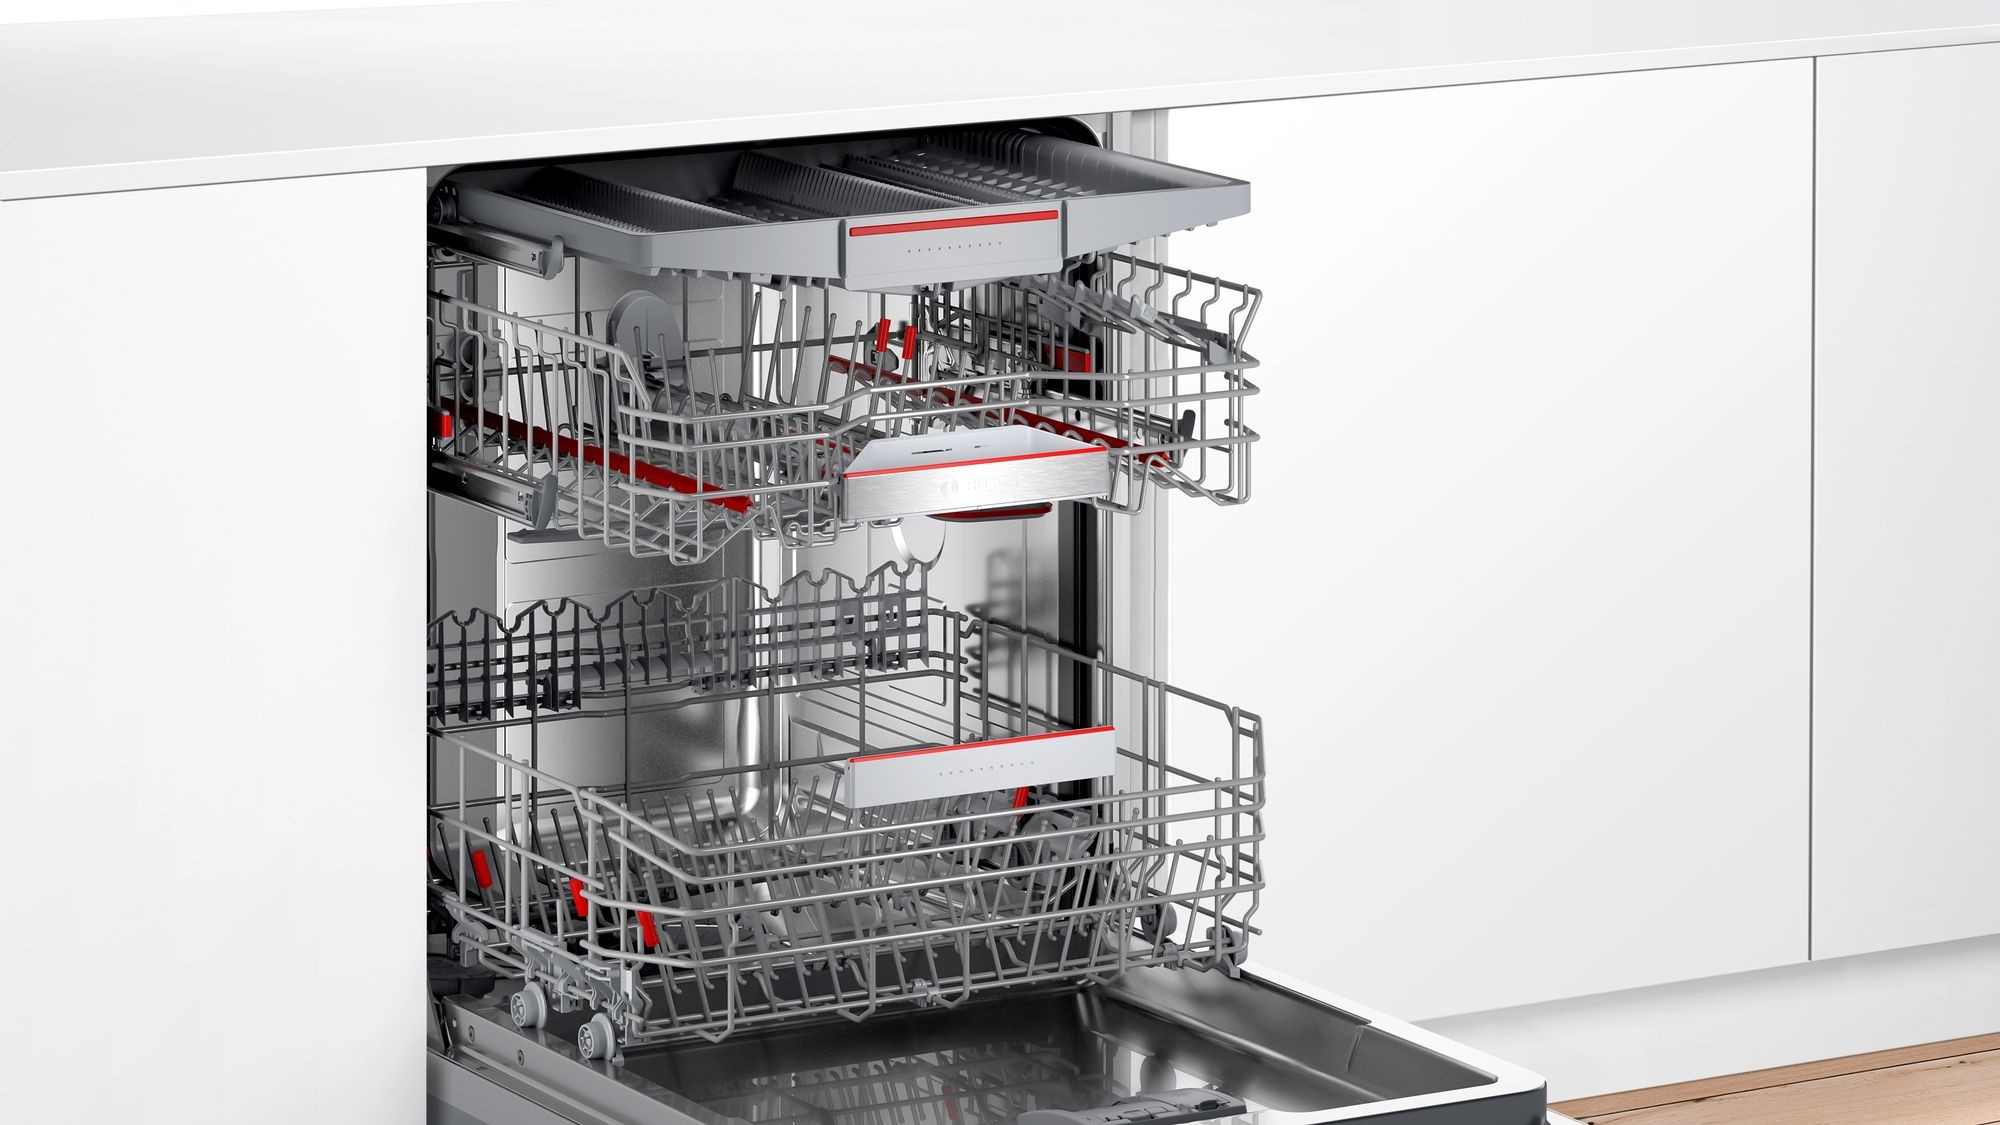 BOSCH Lave vaisselle tout integrable 60 cm Série 6 Home Connect 13 couverts - SMV6ECX93E